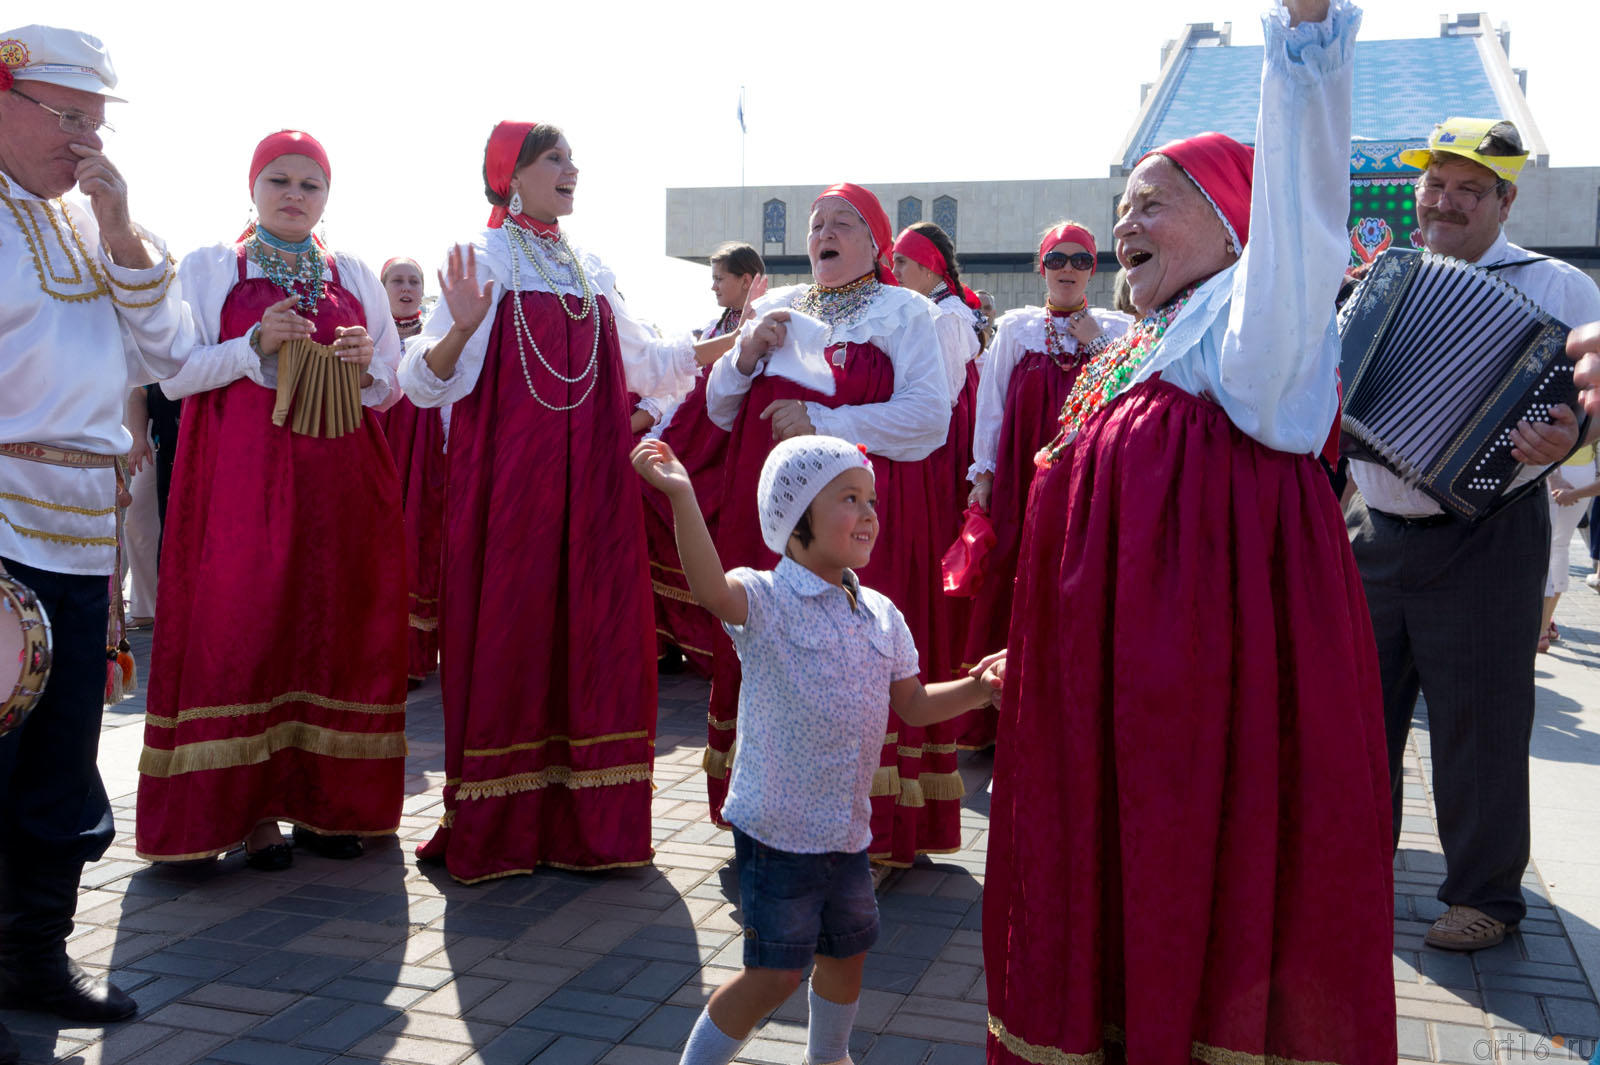 Подражая бабушке::30 августа 2011. День города и Республики Татарстан